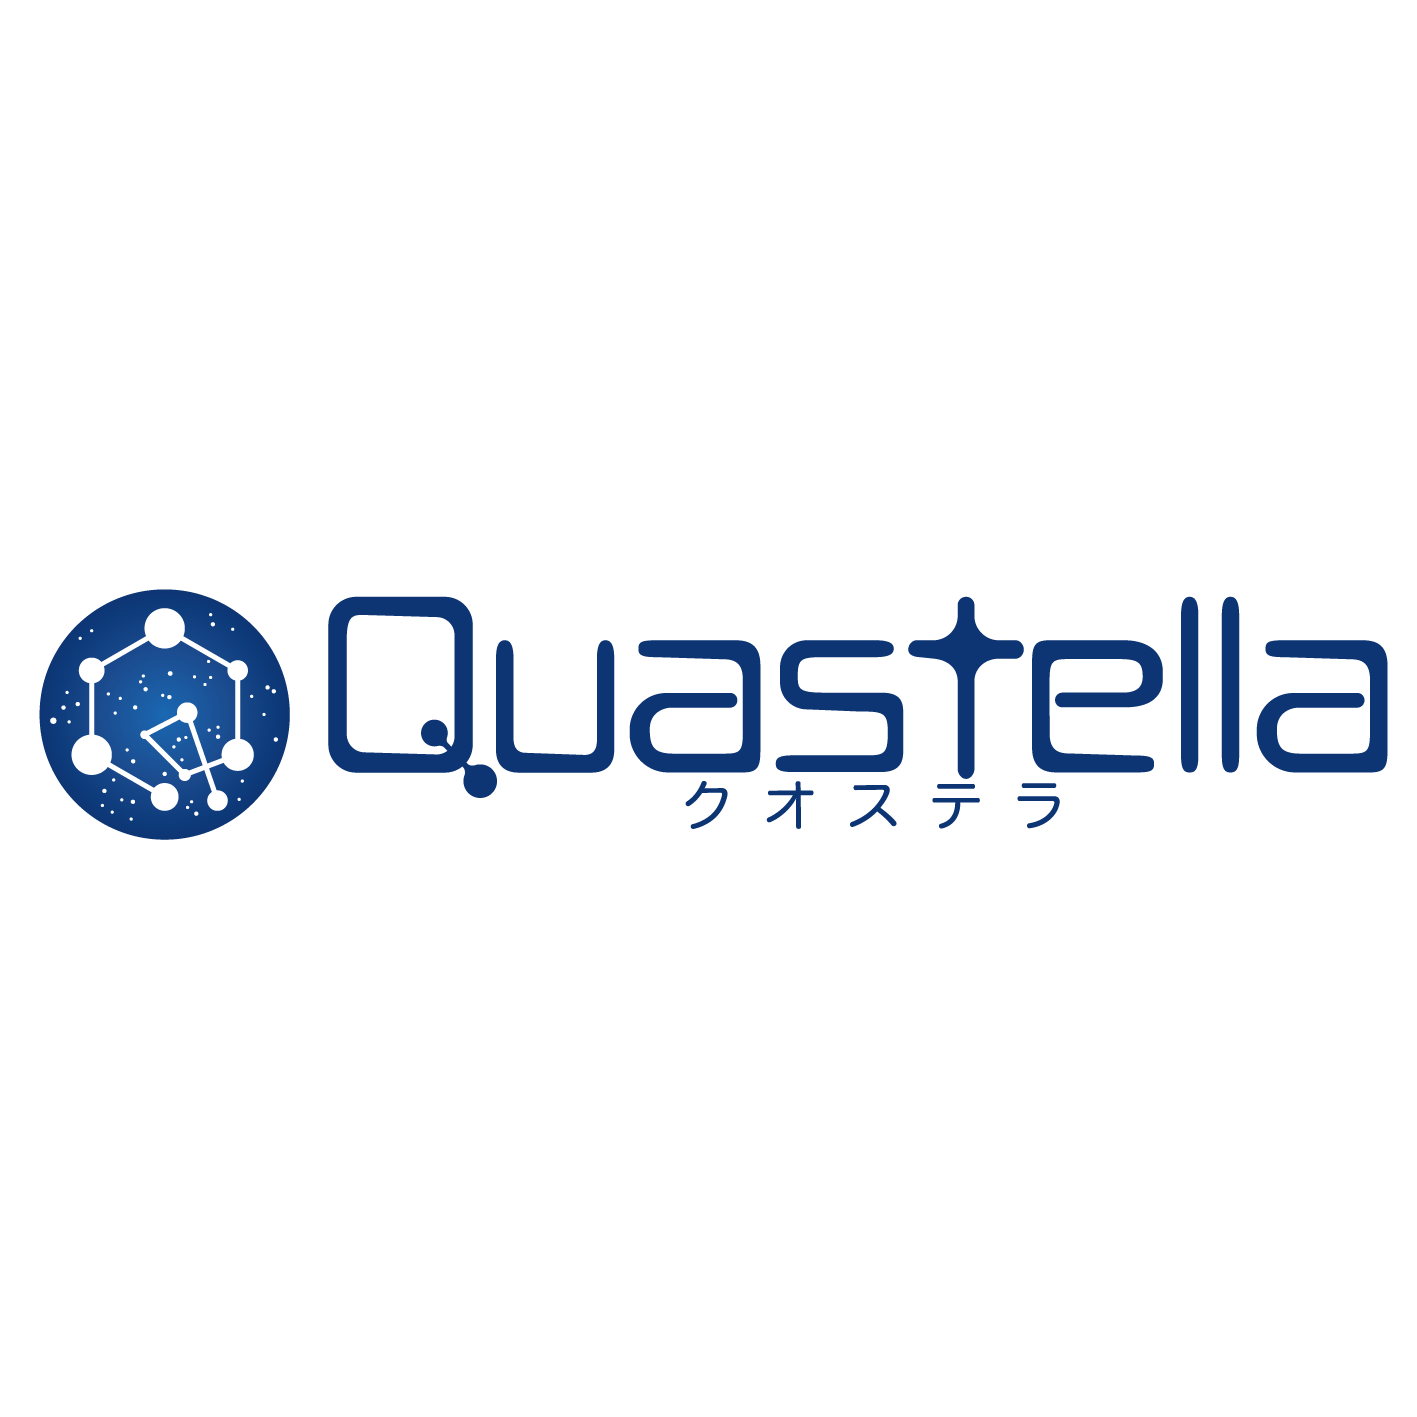 Quastella Inc.